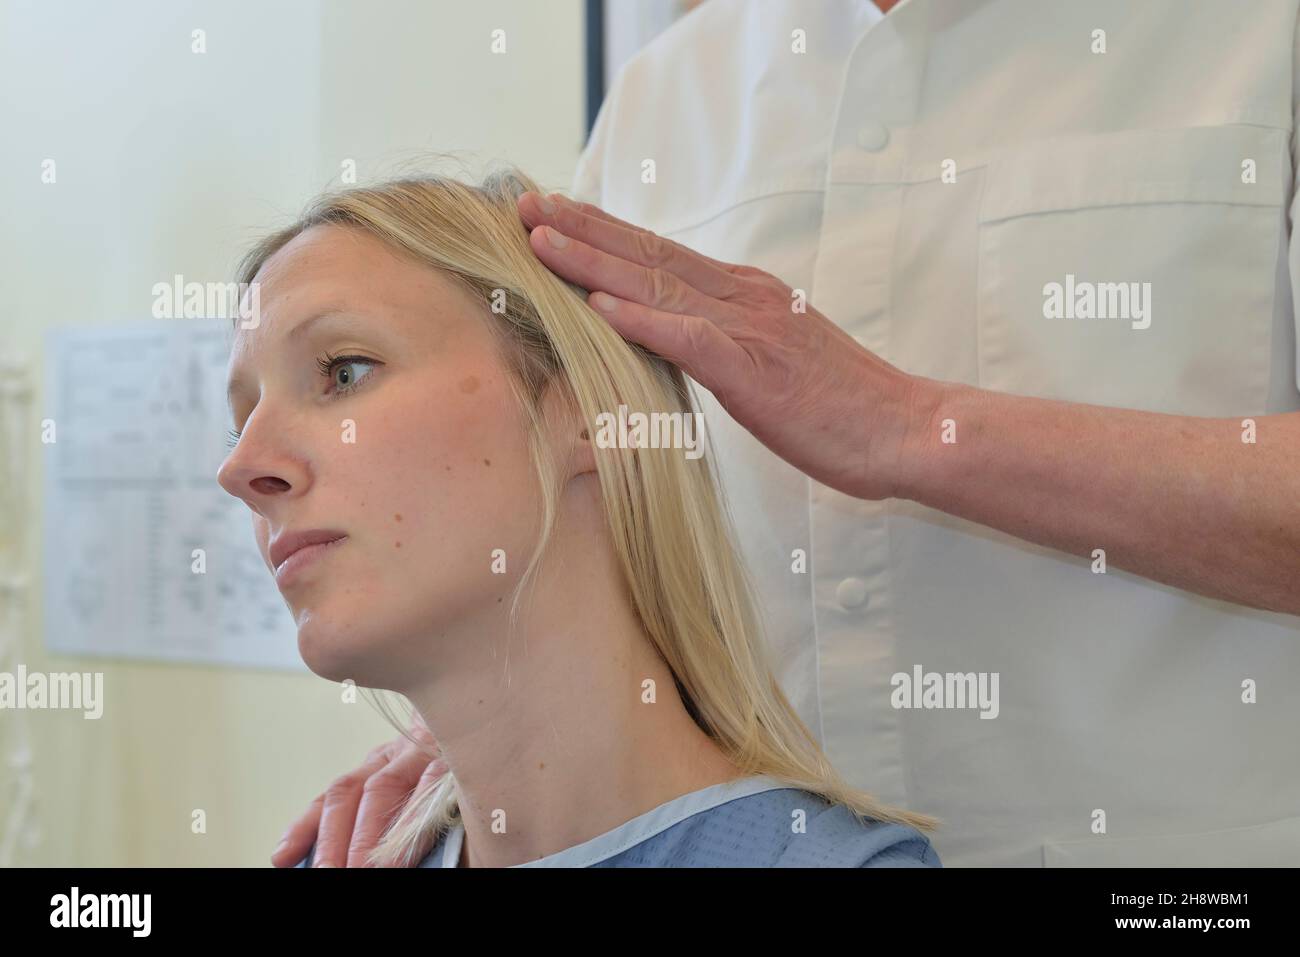 Un quiropráctico masculino ajusta la cabeza, el cuello y la columna vertebral de una paciente femenina. Inglaterra, Reino Unido Foto de stock